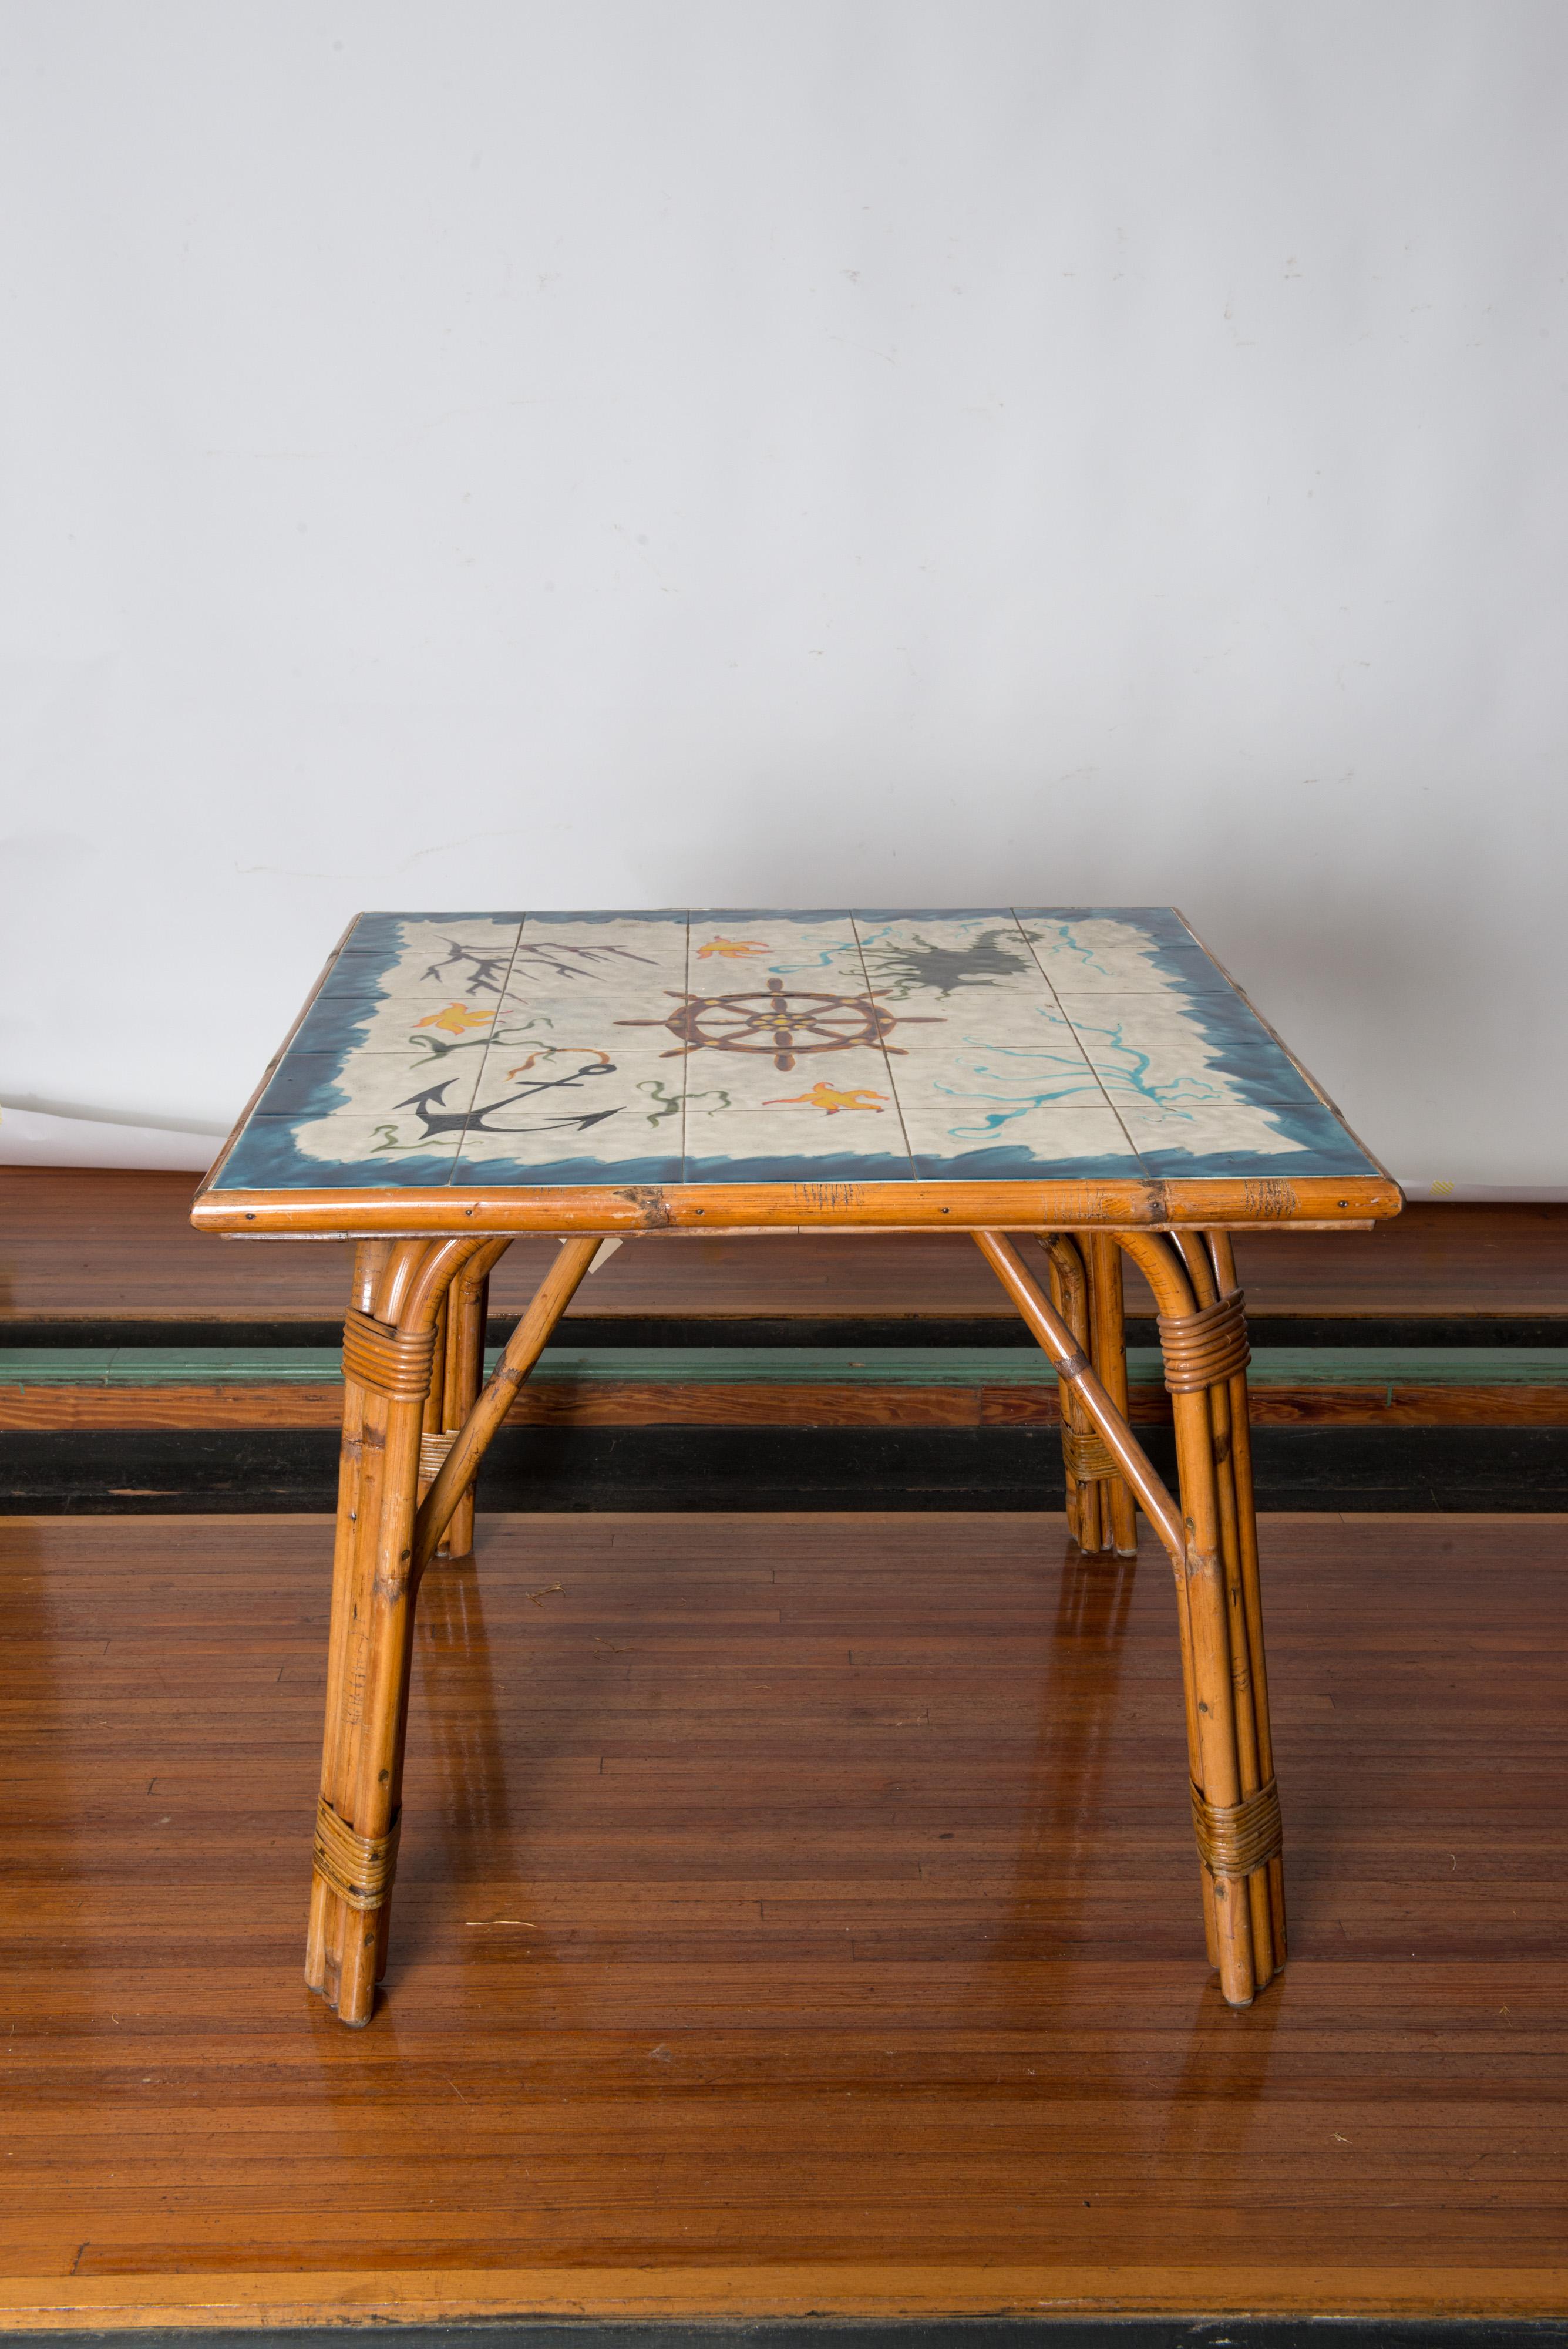 Eine atemberaubende Cote D'Azur Set von signierten Adrien Audoux & Frida Minet Quadrat Rattan und Keramikfliesen Esstisch und vier Rattan-Stühle. Der signierte Künstler der nautischen Keramikplatte ist der renommierte Georges Chassin. Die